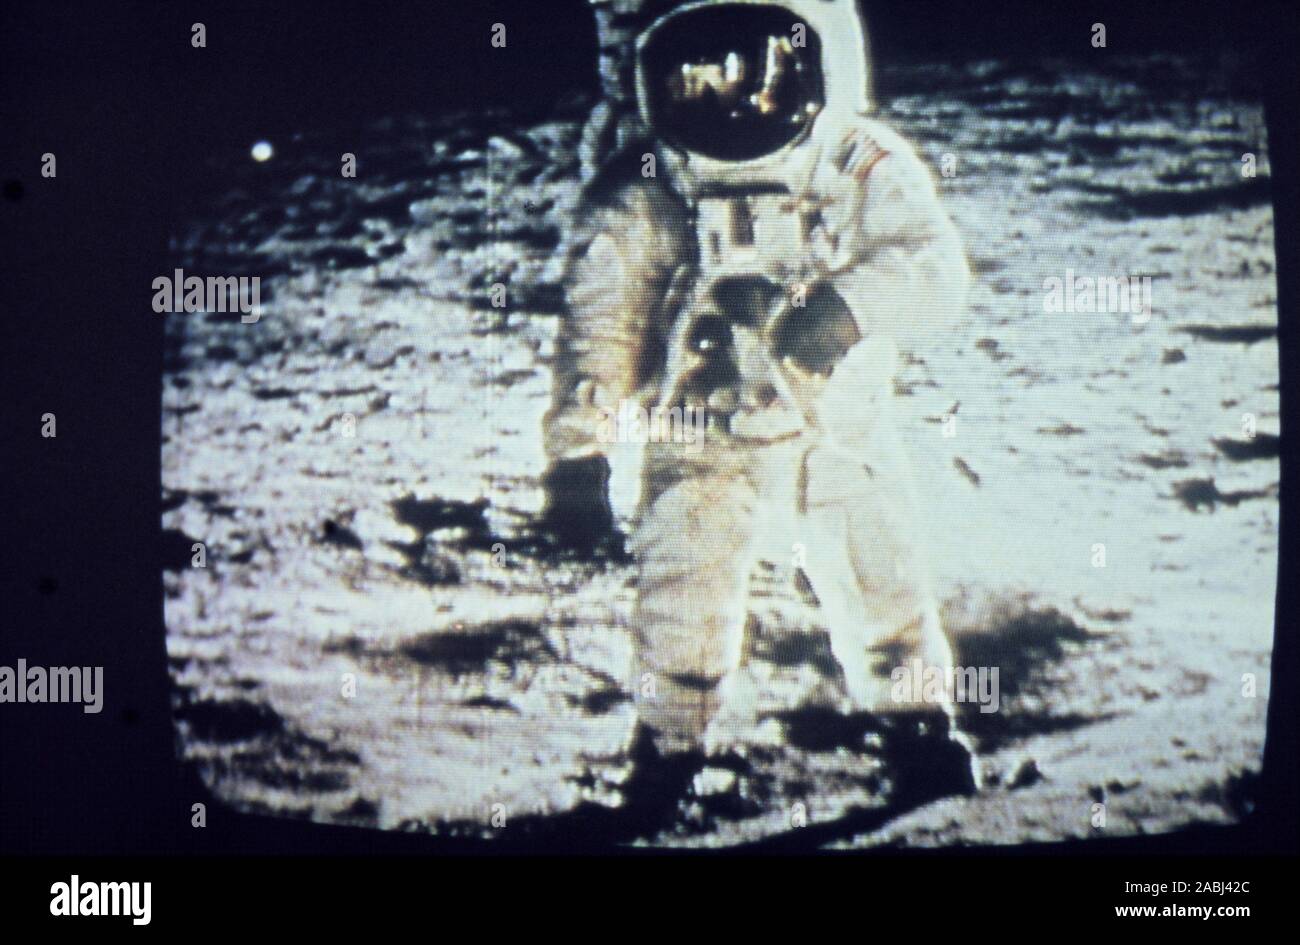 Teleclip - Apollo 11 Buzz Aldrin - tourné par Neil Armstrong - photo prise directement sur écran de télévision circa 1969/72 Banque D'Images